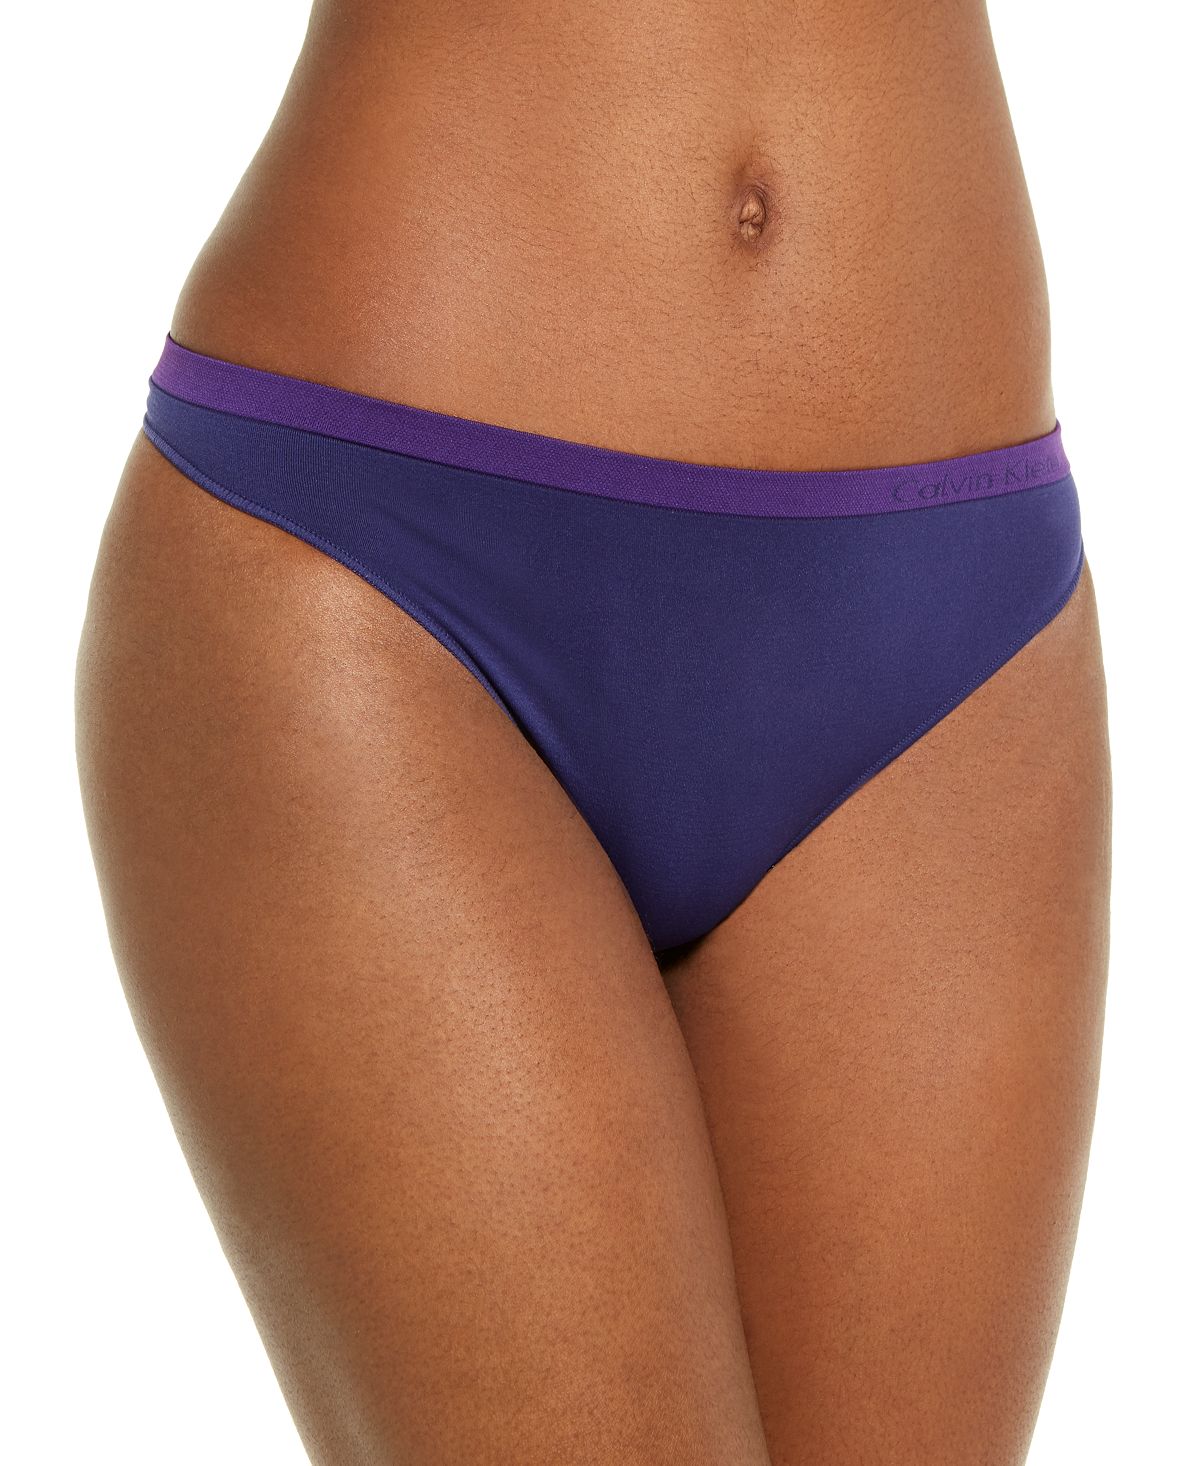 http://www.cheapundies.com/cdn/shop/products/Calvin-Klein-Pure-Seamless-Thong-Underwear-Qd3544-Purple-Night_110308.jpg?v=1683803665